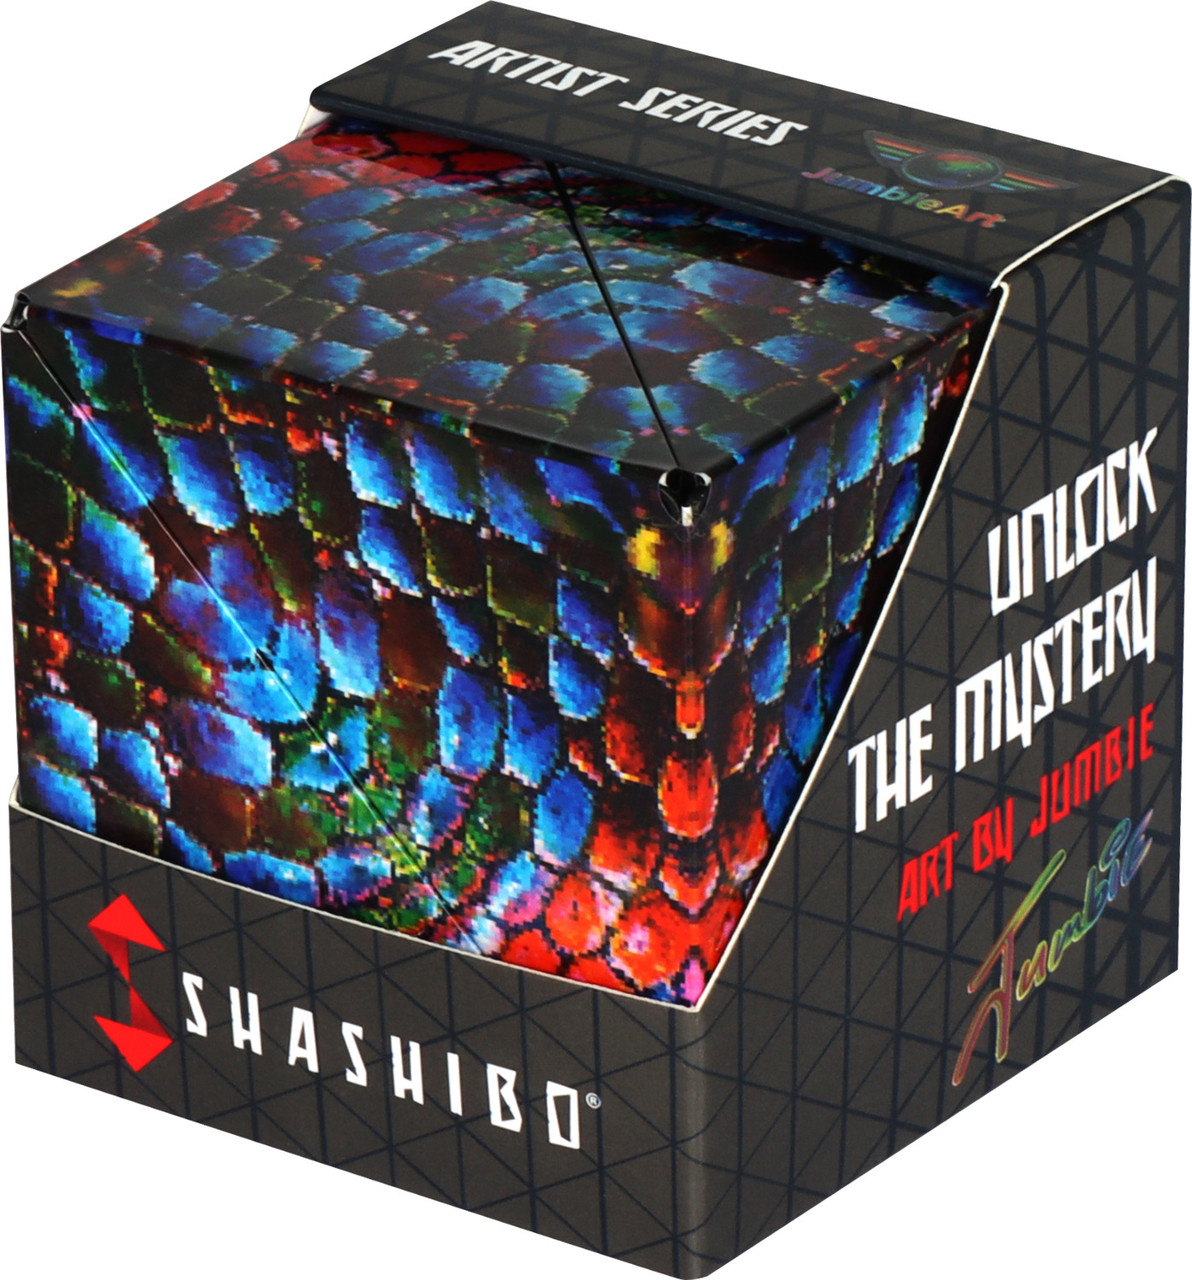 Shashibo - The Chameleon 1